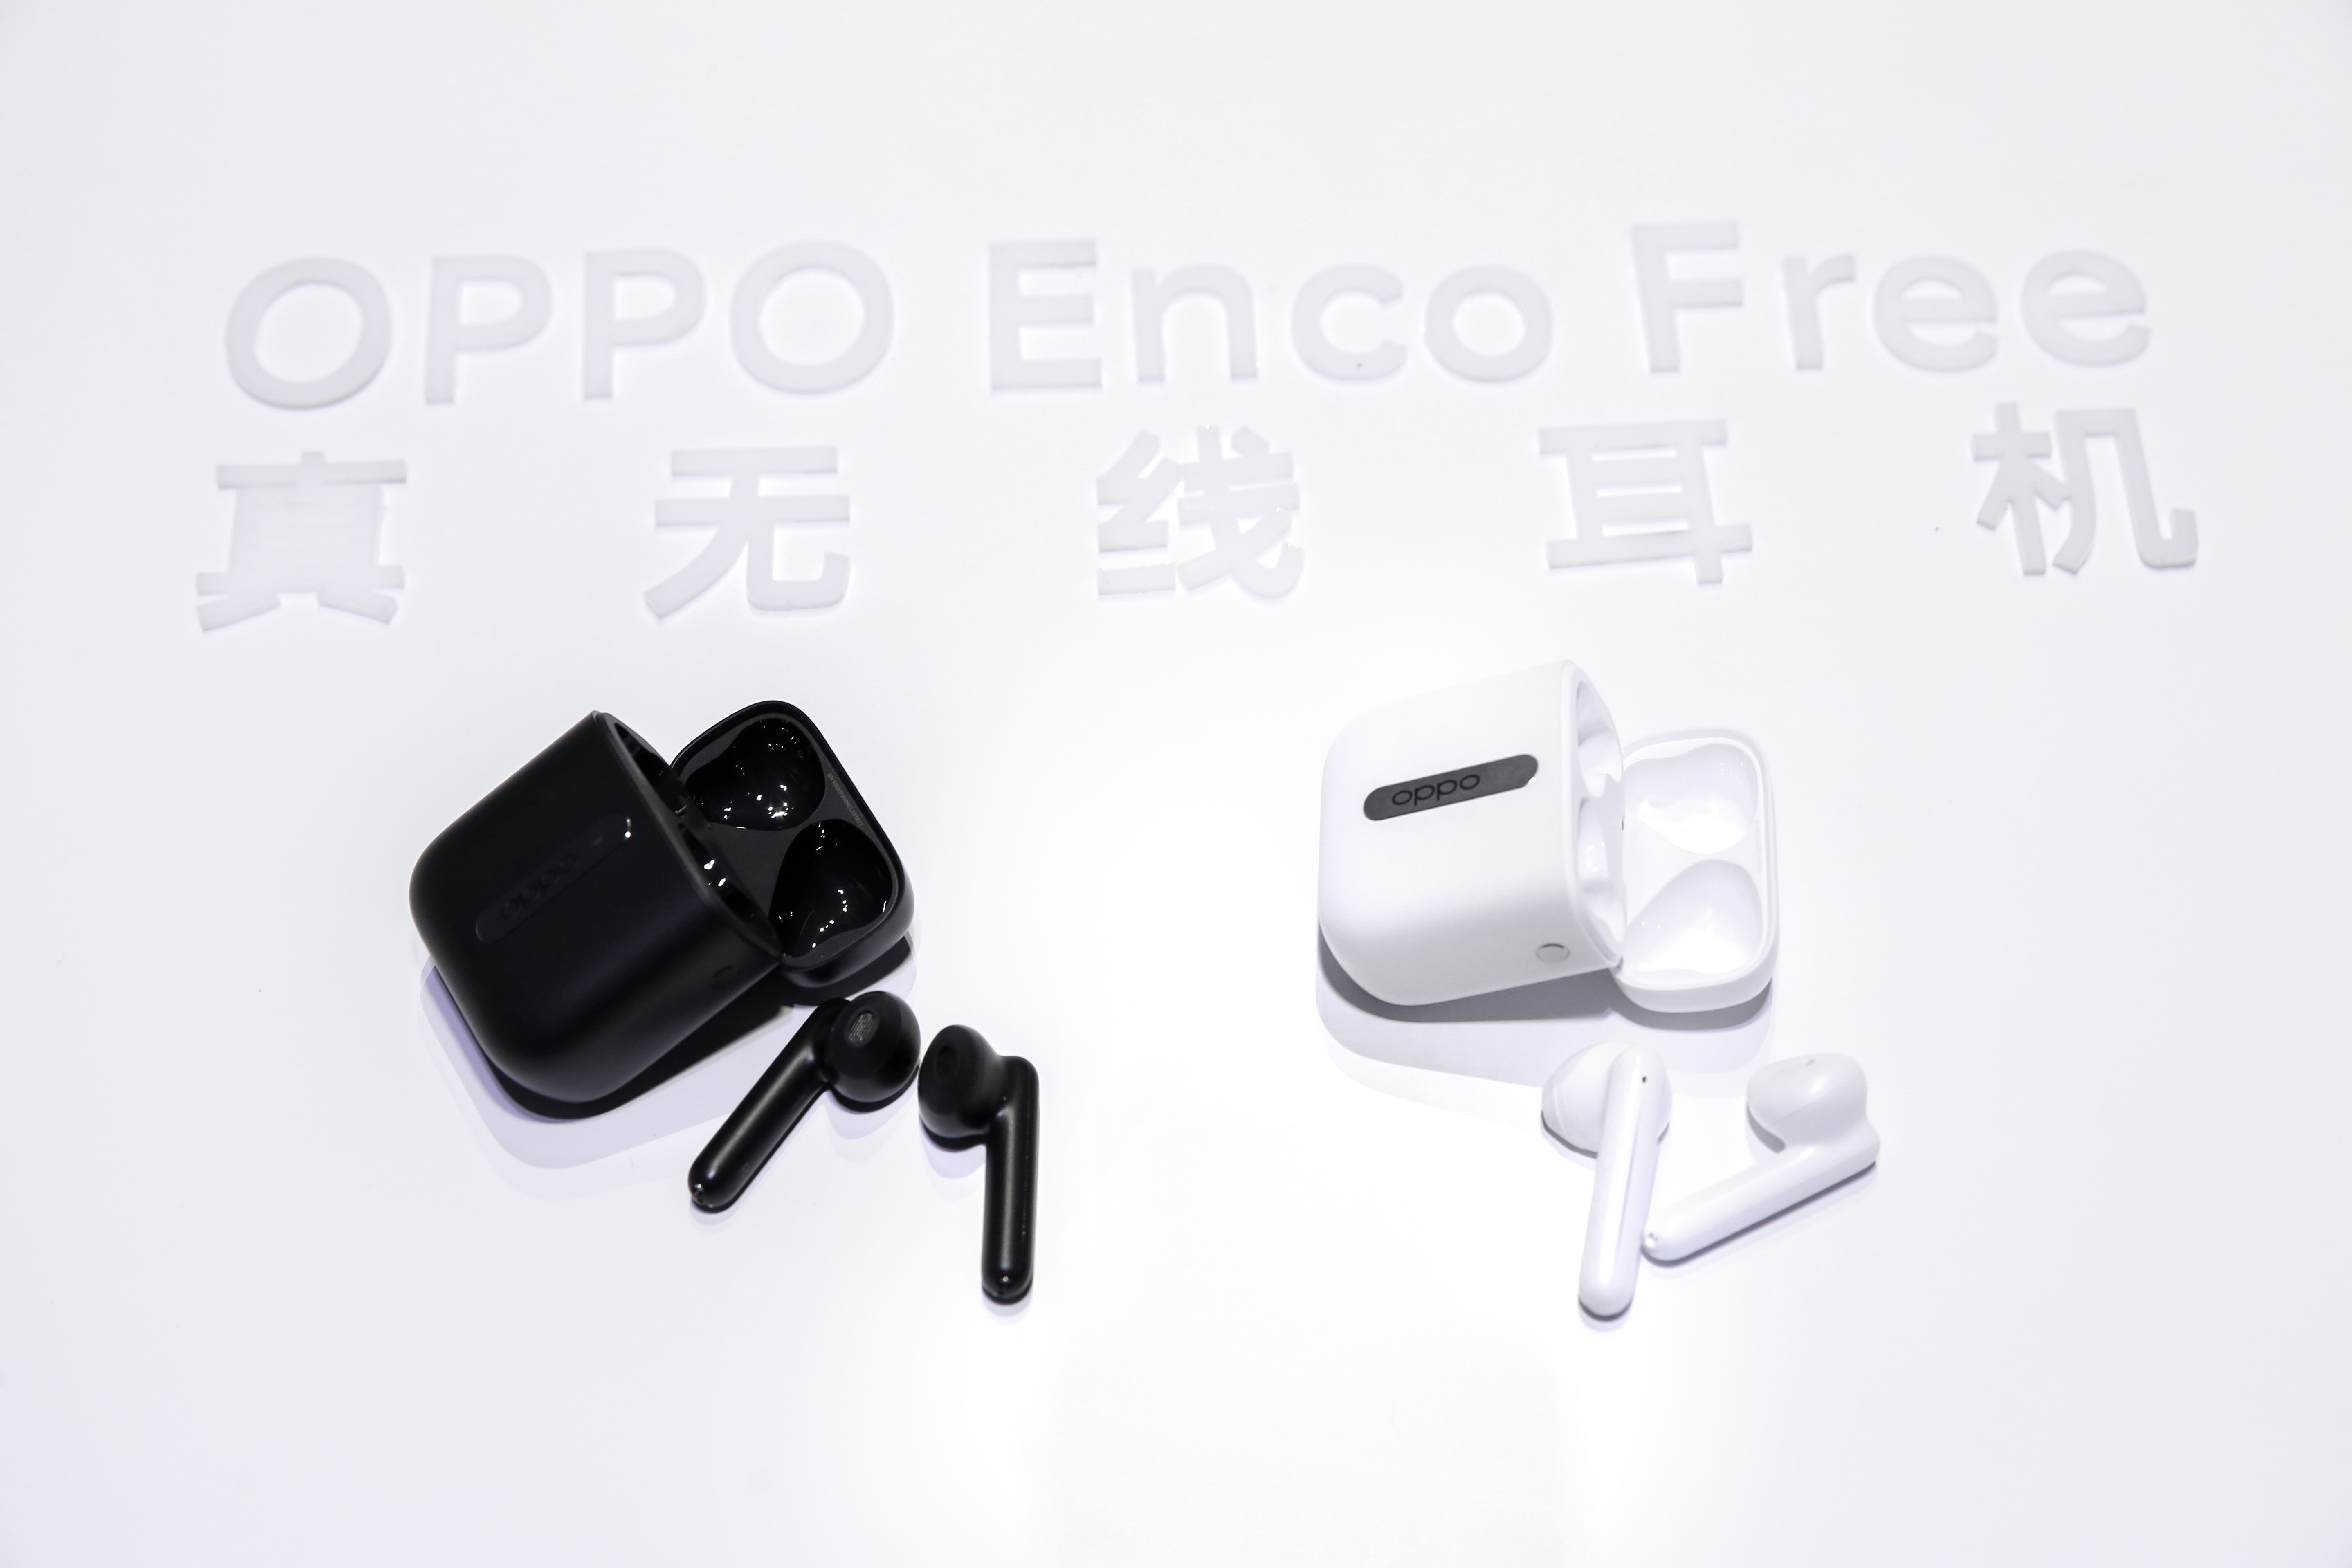 oppo enco free真无线耳机发布:采用通话降噪ai算法技术 支持ipx4